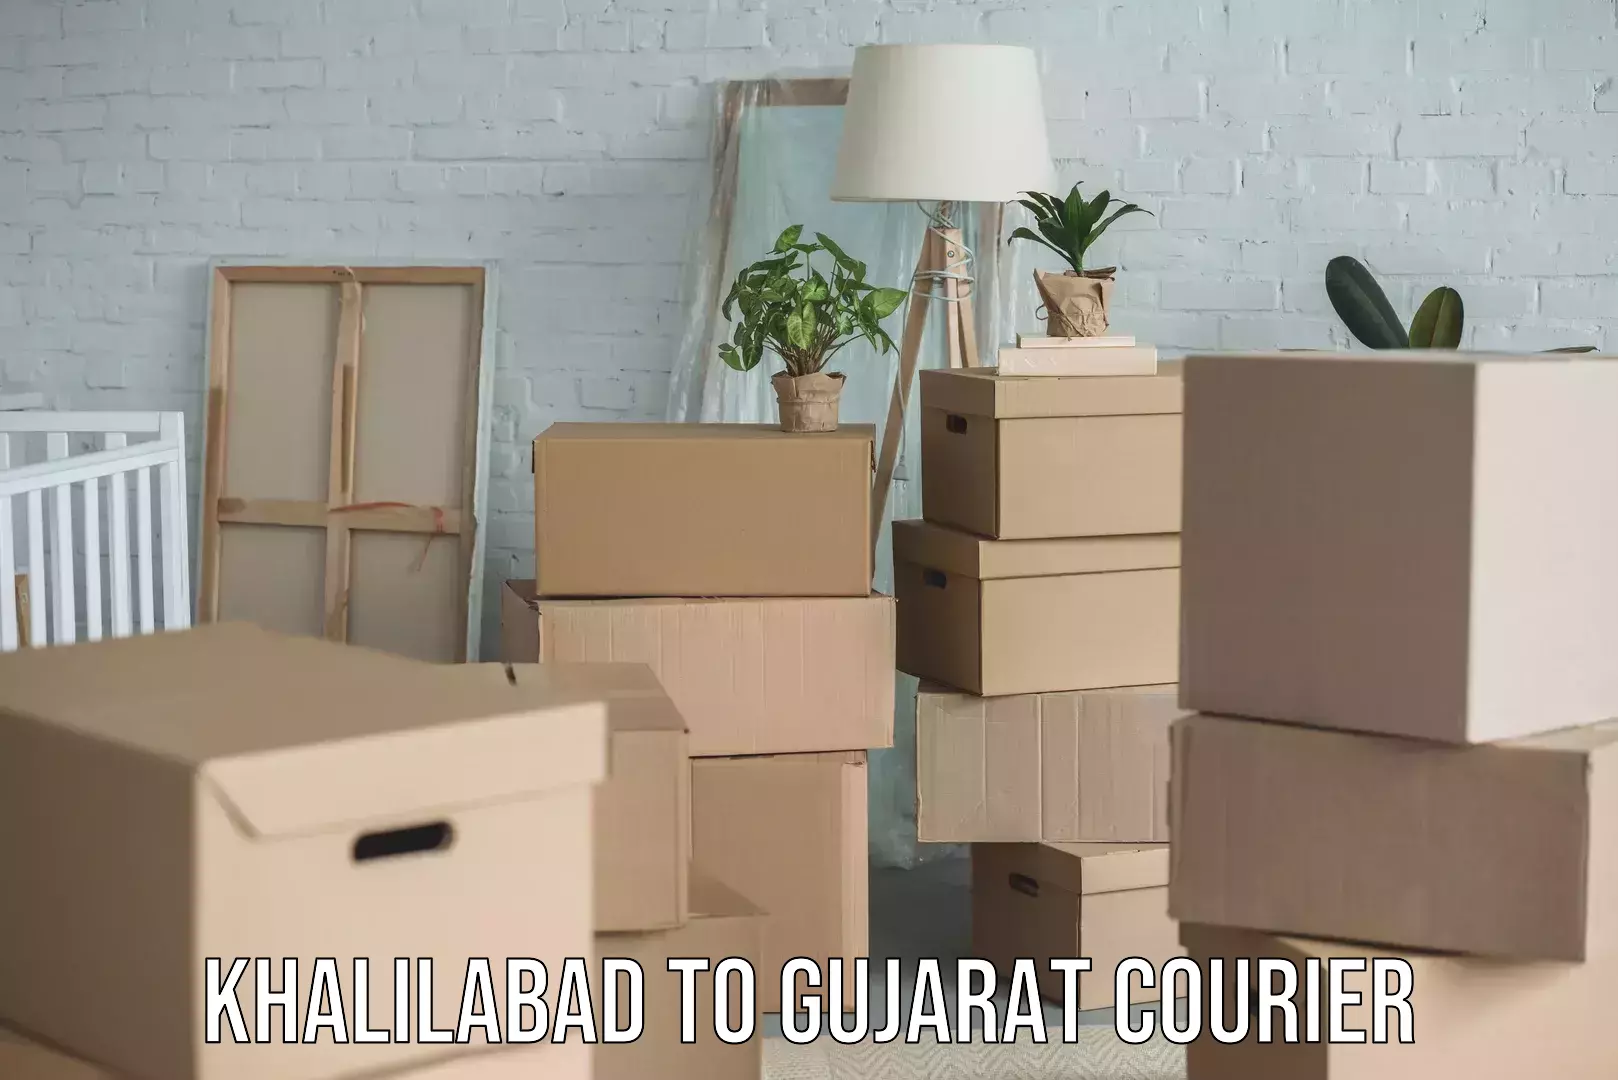 Skilled furniture transporters Khalilabad to Gujarat